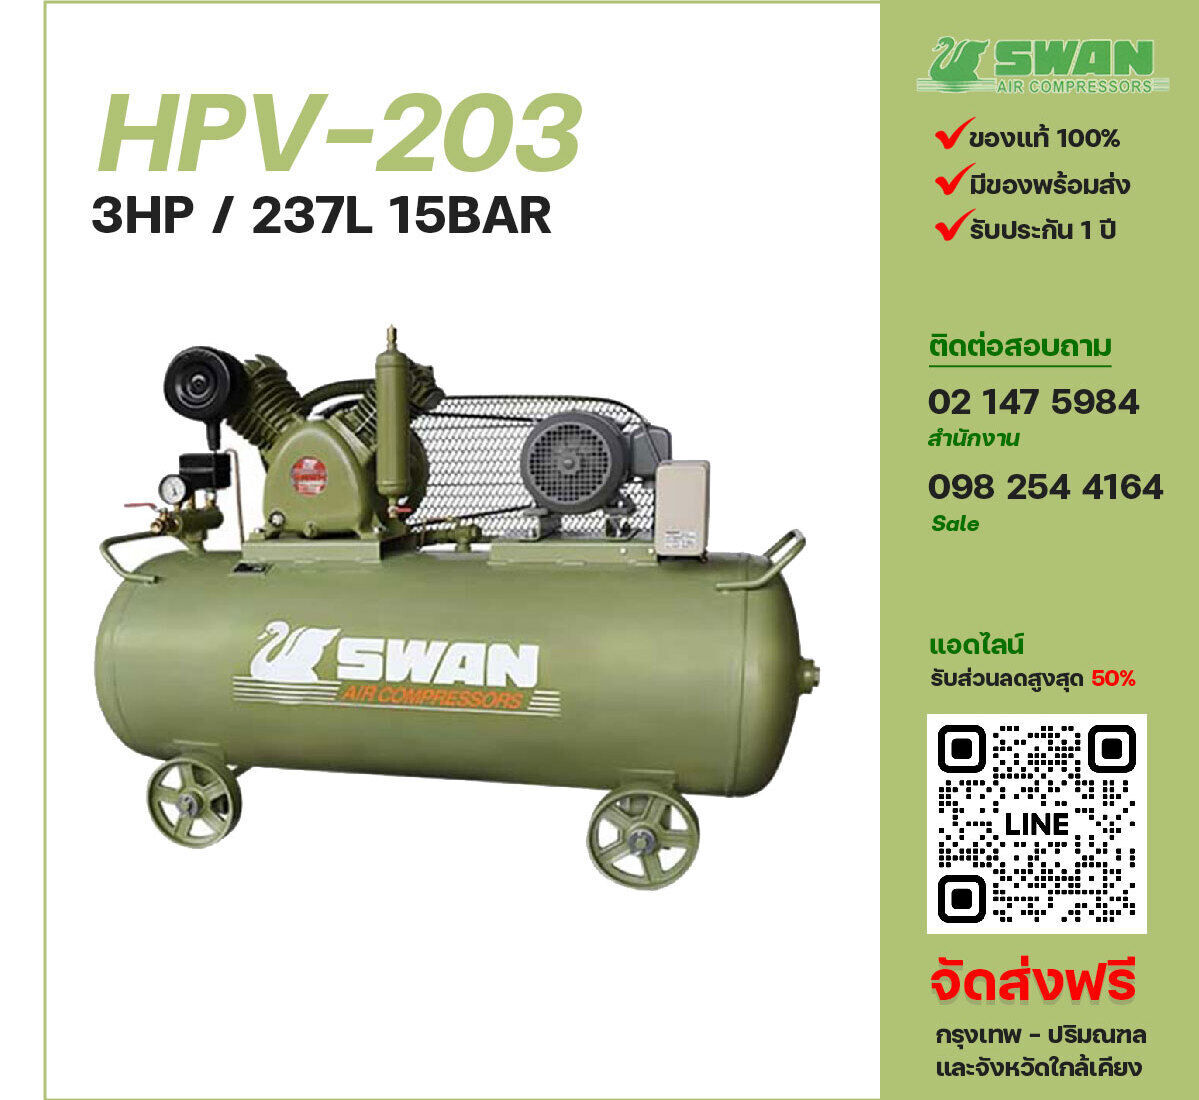 ปั๊มลมสวอนแรงดันสูง SWAN Two-Stage HPV-203 220V/380V ปั๊มลมลูกสูบ ขนาด 2 สูบ 3 แรงม้า 237 ลิตร FUSHENG พร้อมมอเตอร์ ไฟ 220V/380V ส่งฟรี กรุงเทพฯ-ปริมณฑล รับประกัน 1 ปี